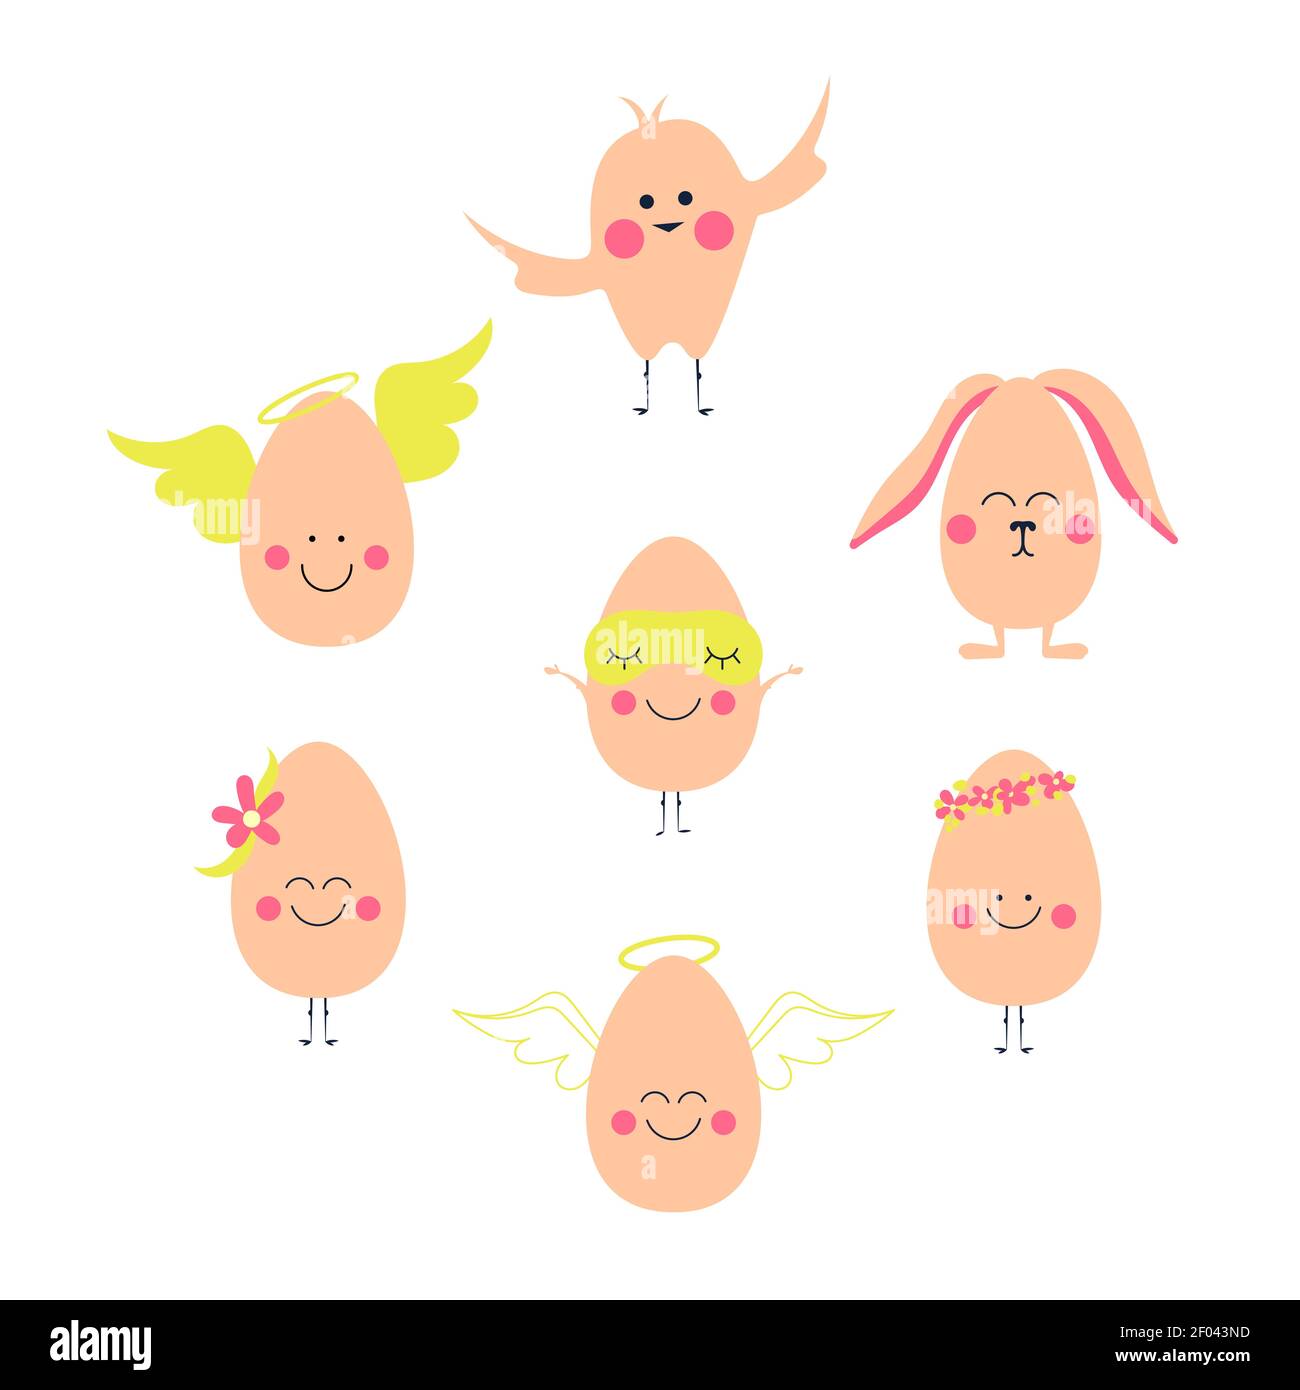 Ostereier Charaktere mit Emotionen. Eierengel, osterhase, Huhn Stock Vektor